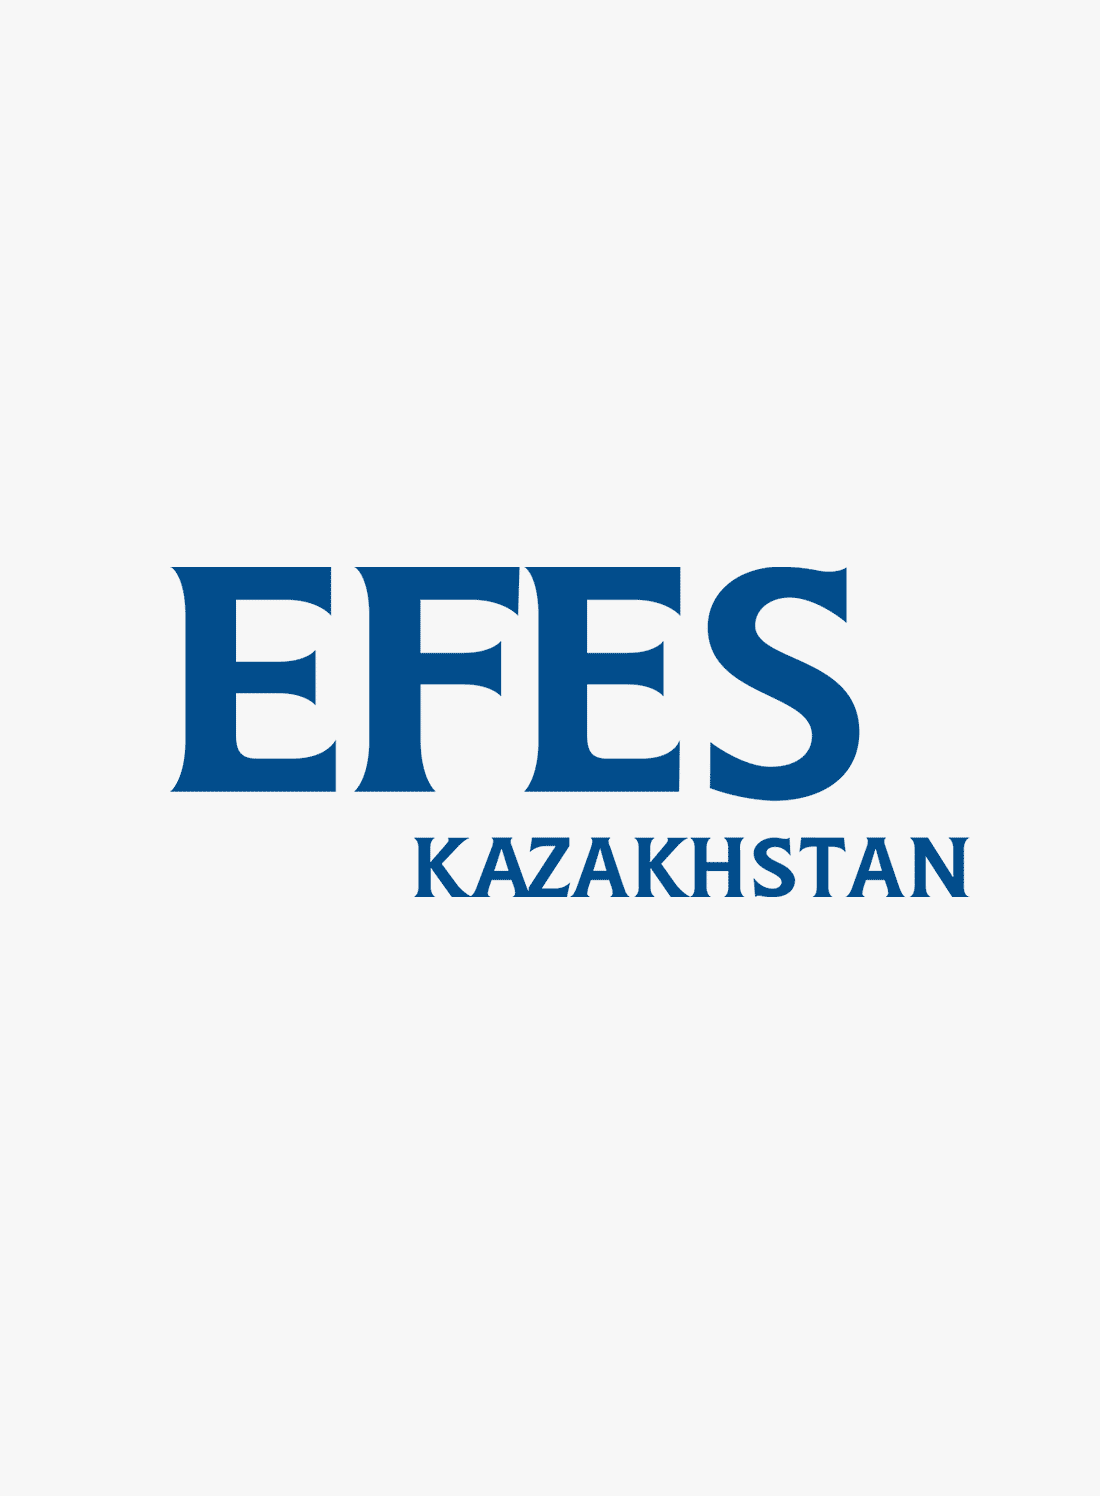 Efes Kazakhstan